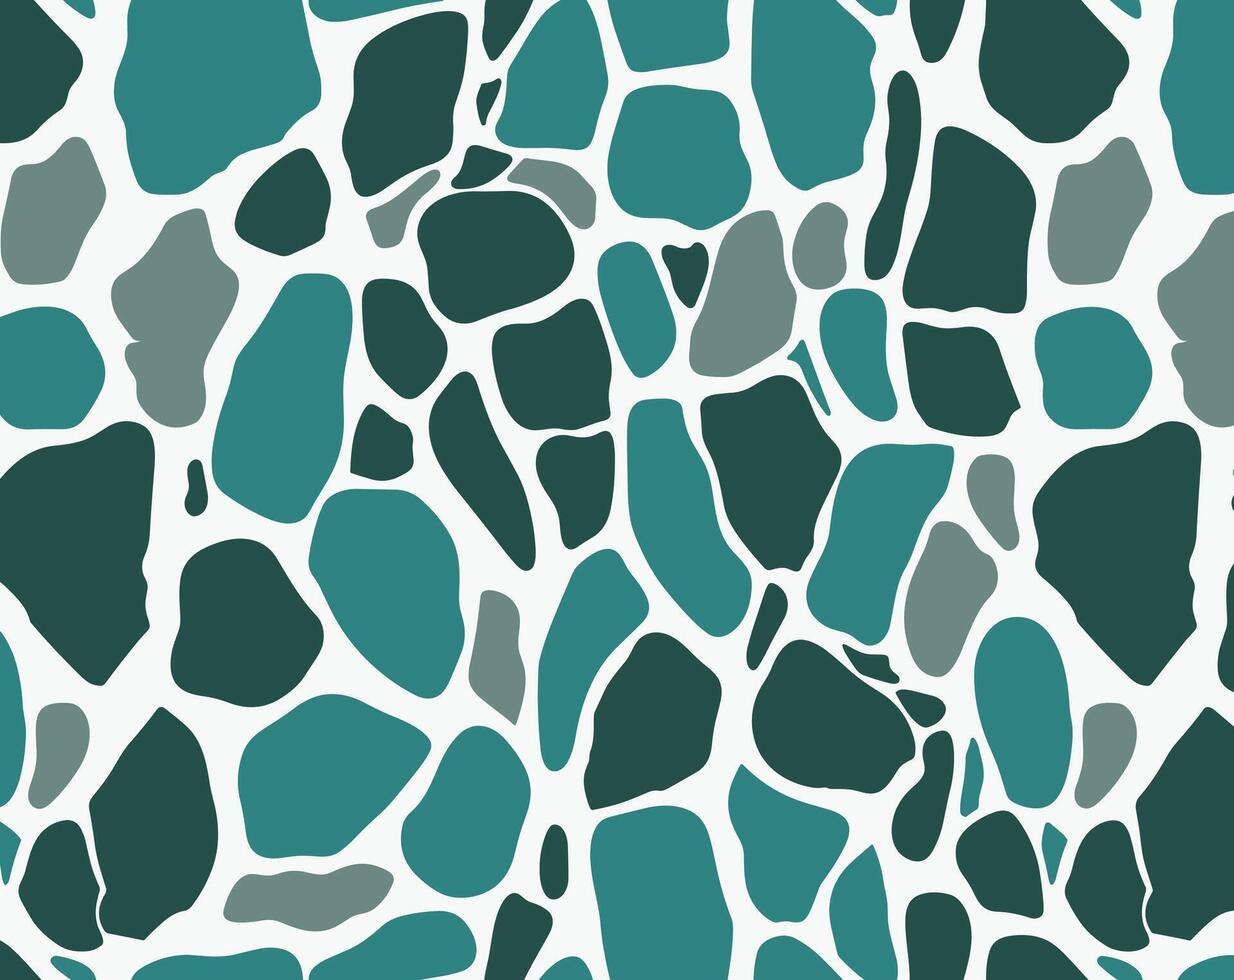 grön och grå leopard skriva ut mönster på vit bakgrund, brevlådor, organisk former, ljus kricka och mörk vit, flerfärgad minimalism vektor